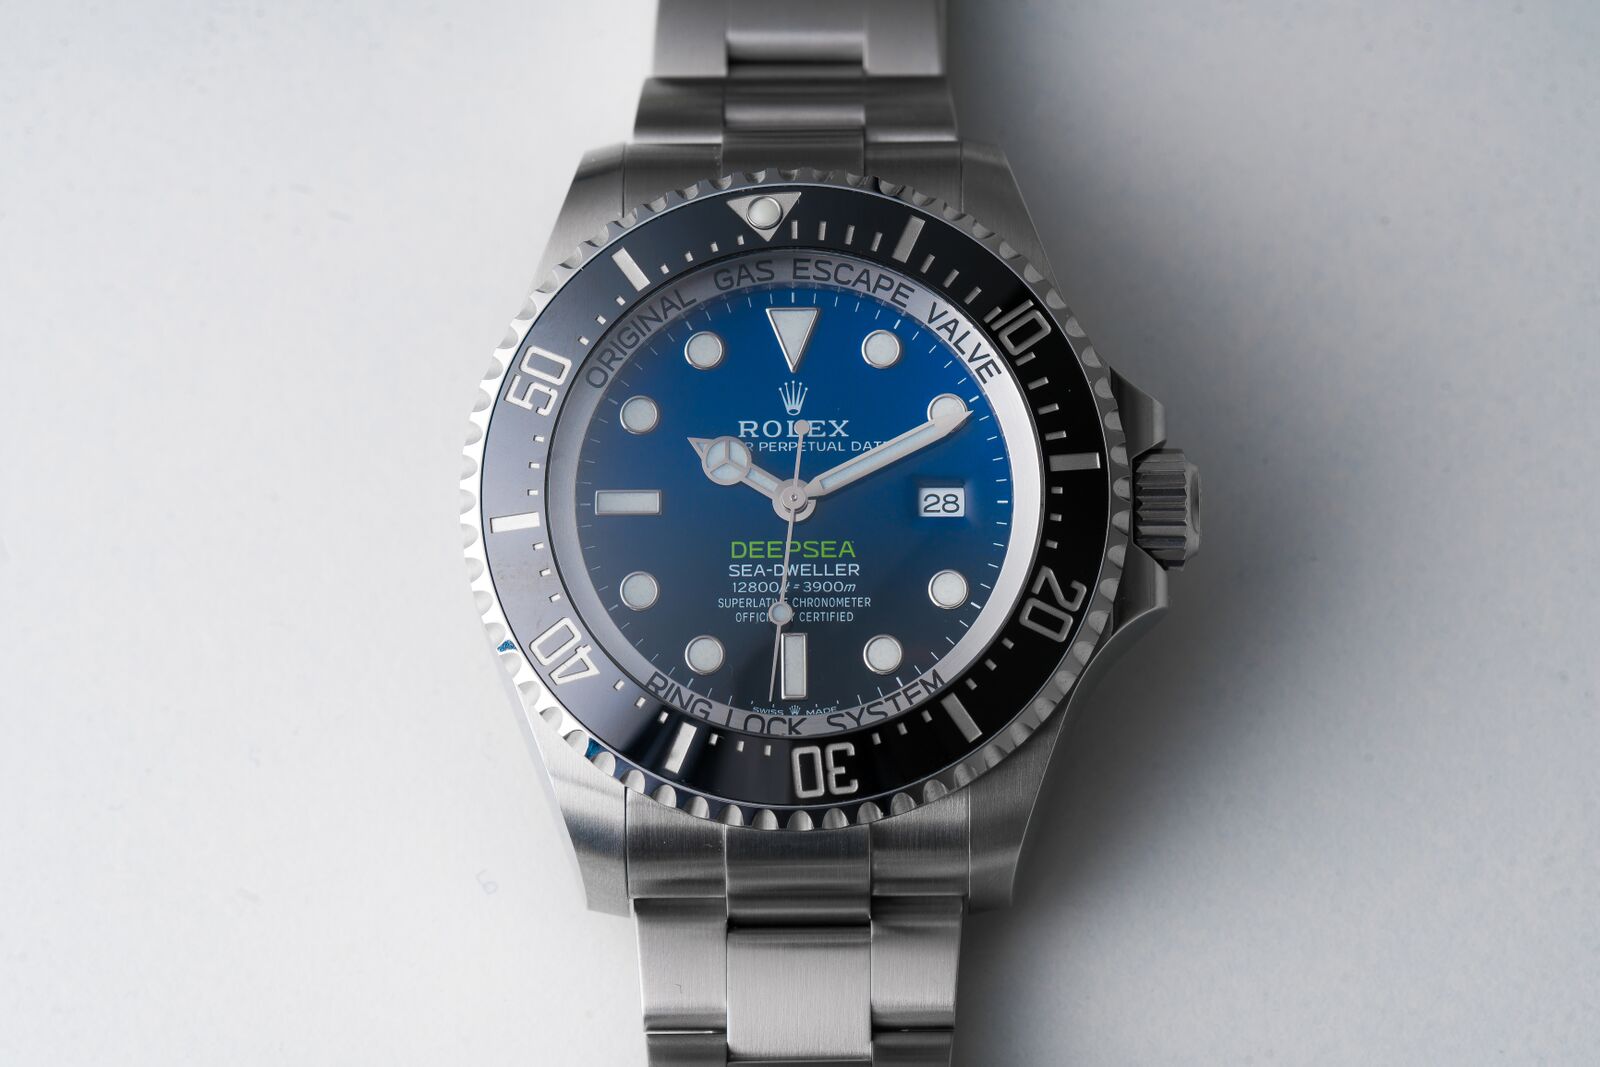 Watch of the Week: Rolex Deepsea